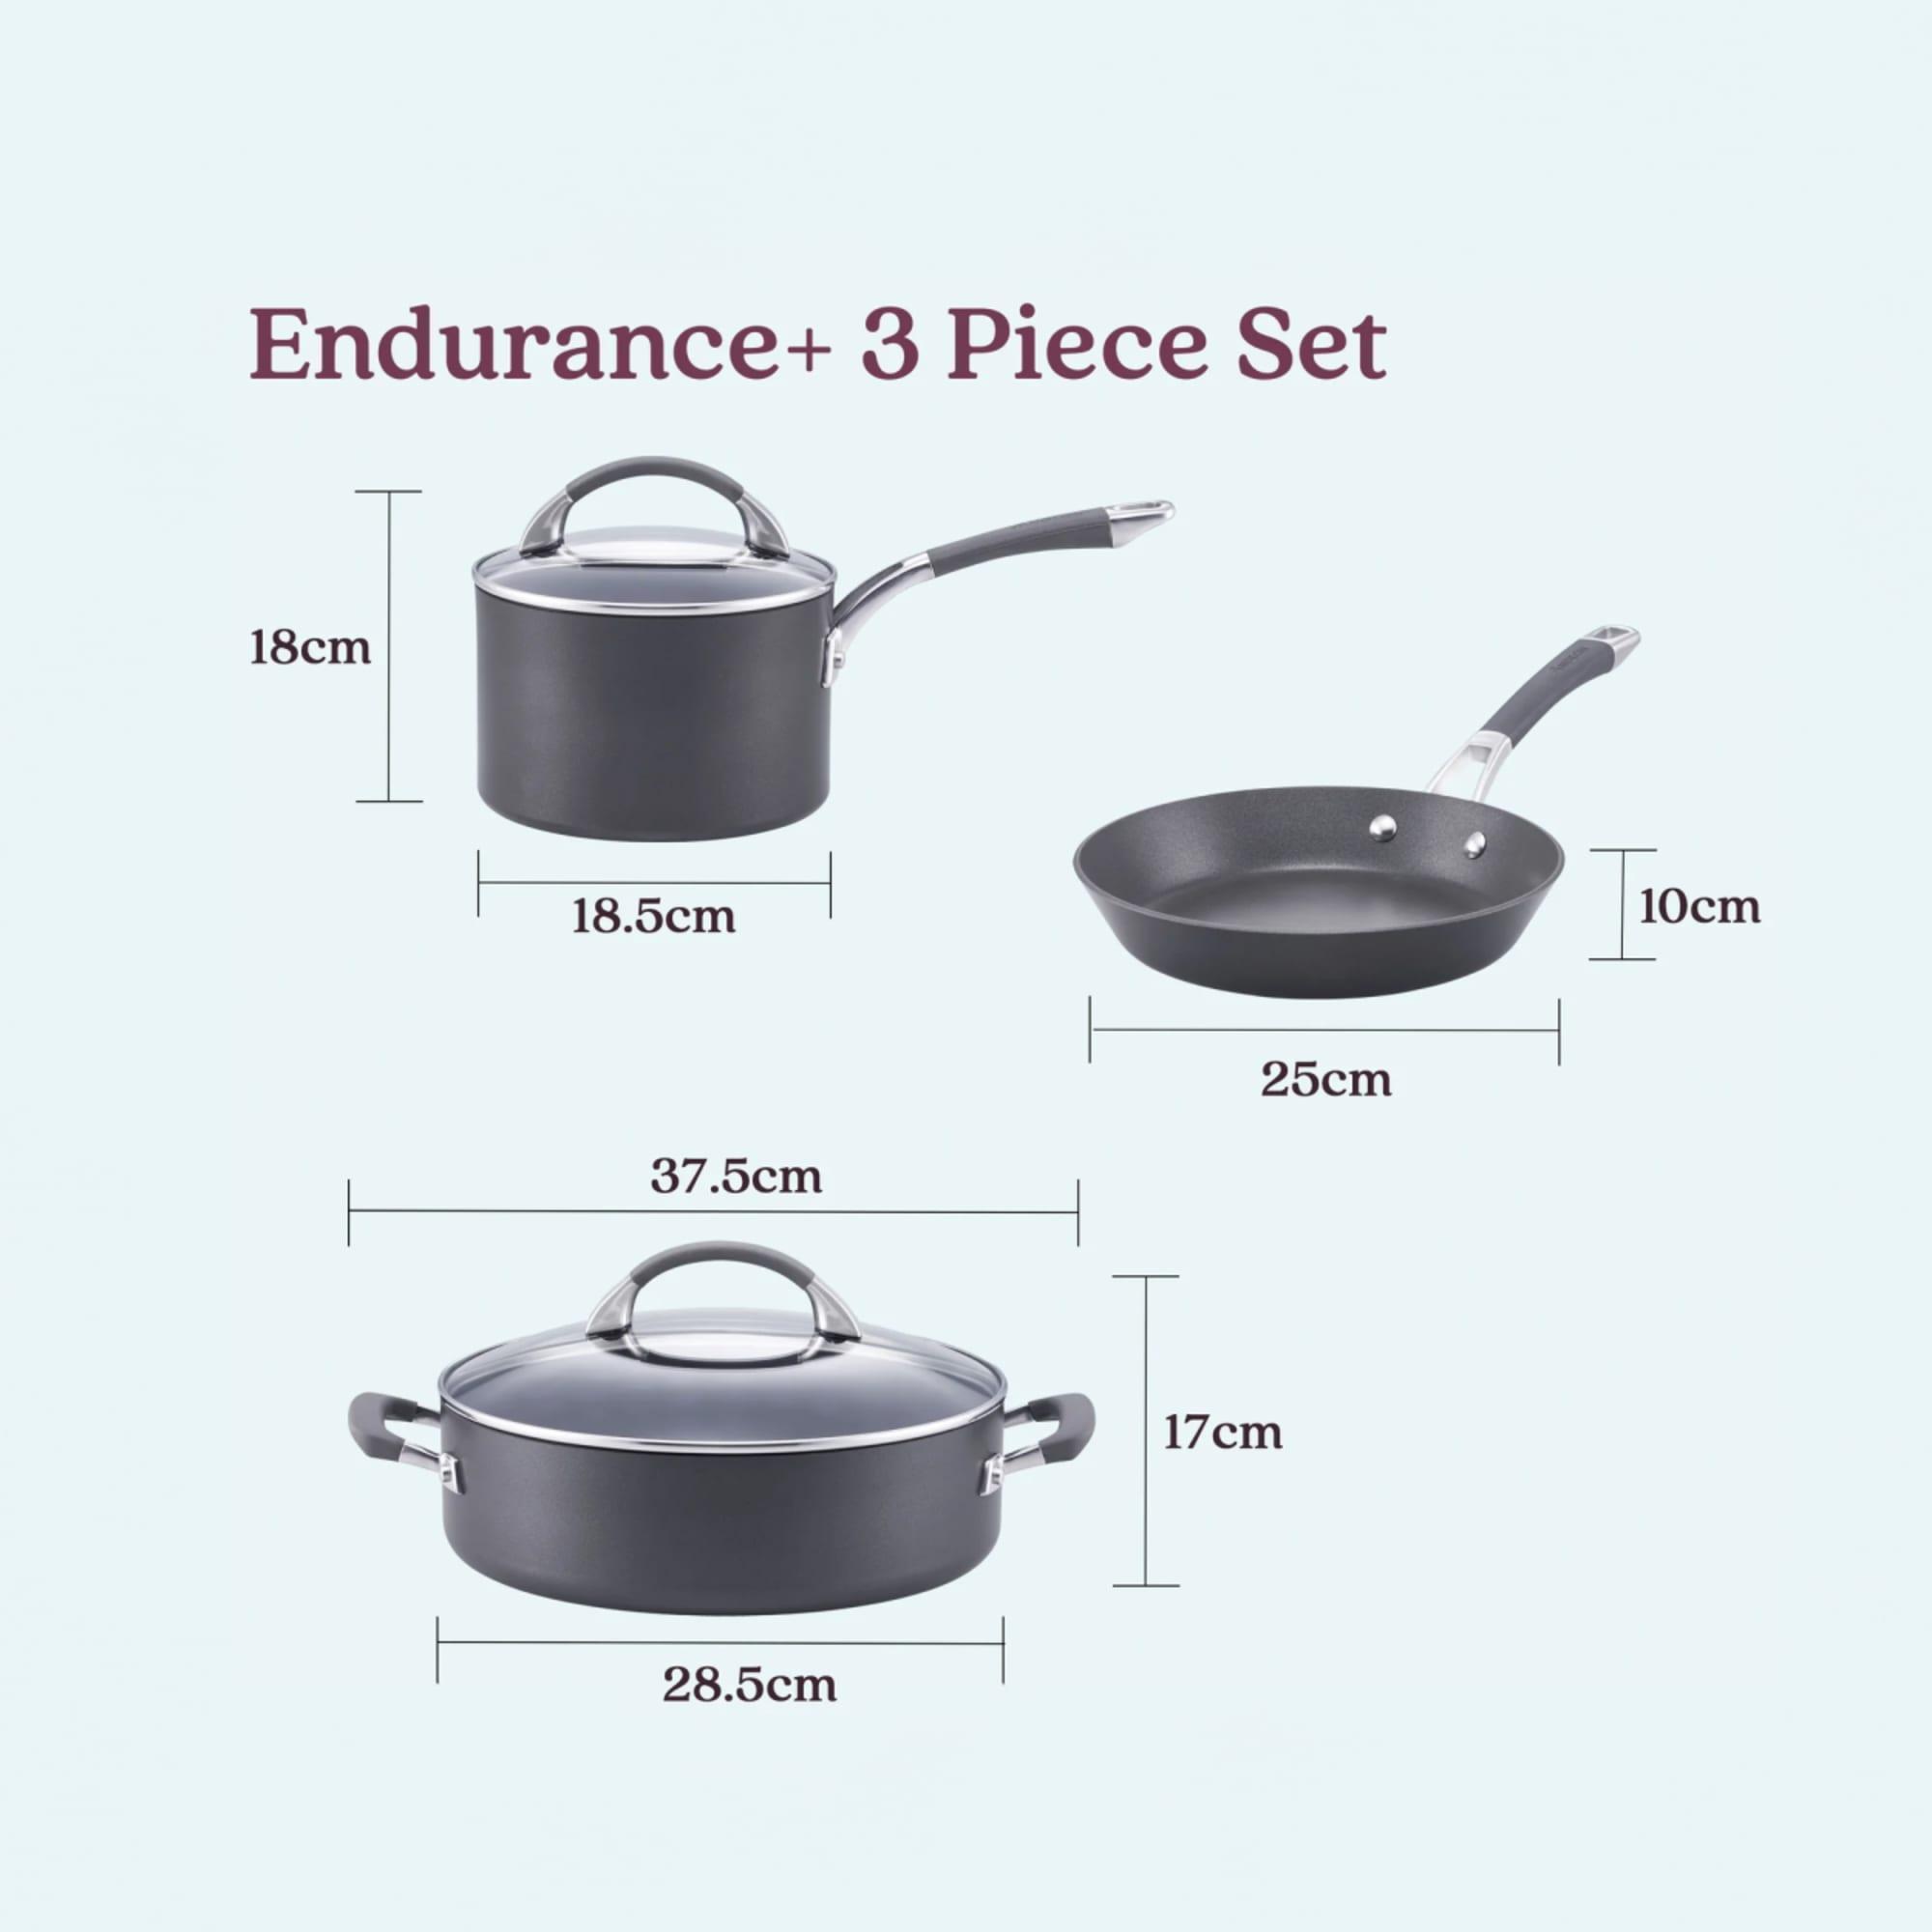 Anolon Endurance+ 3pc Cookware Set Image 8